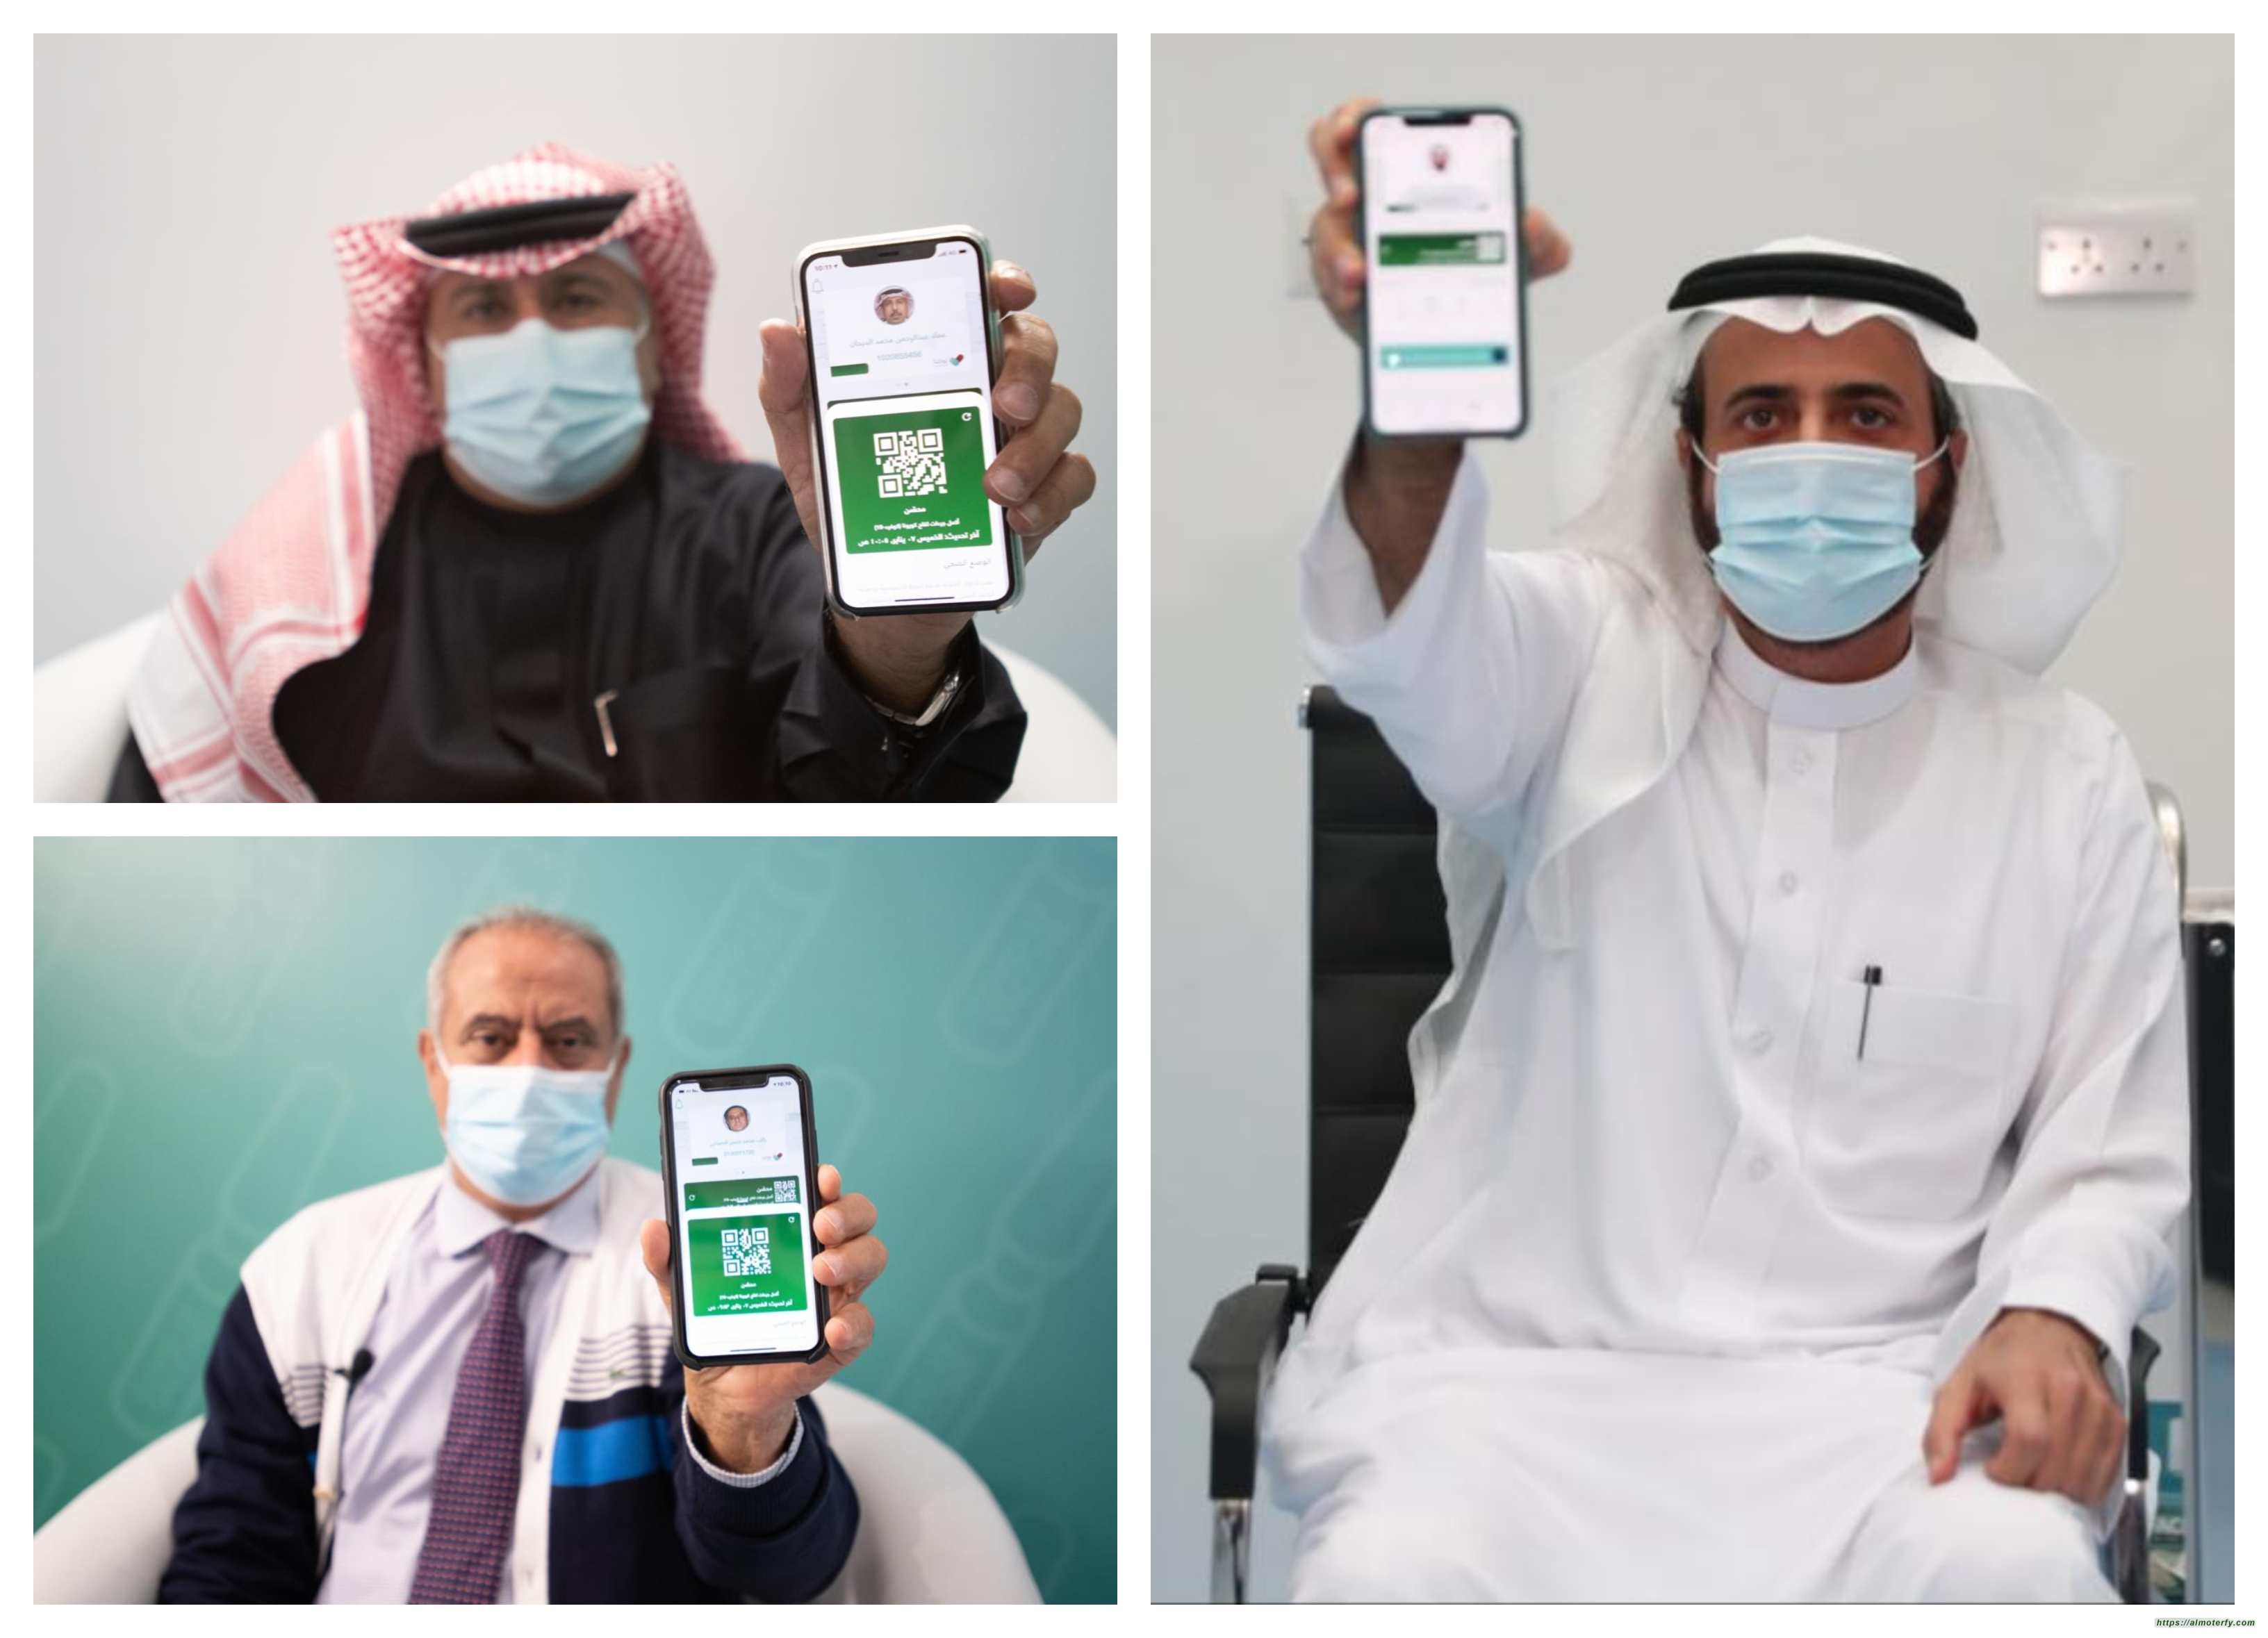 وزارة الصحة وسدايا تعلنان إطلاق خدمة "الجواز الصحي" عبر تطبيق توكلنا